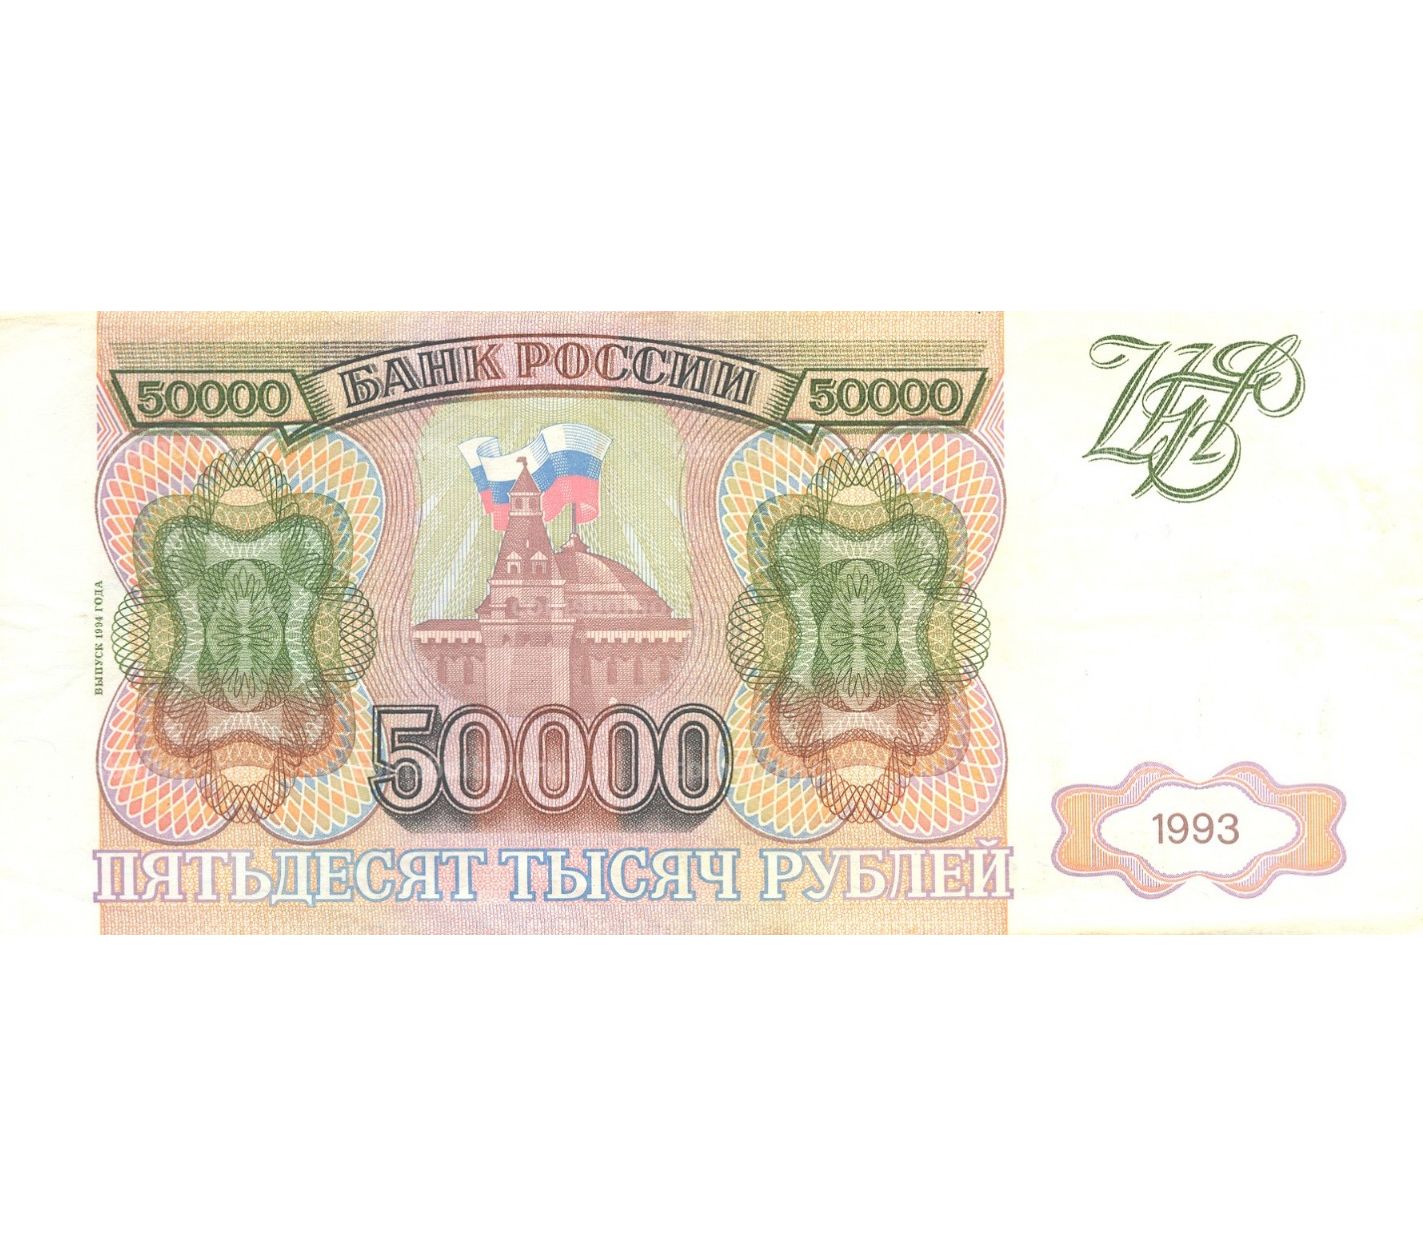 50000 рублей 1993. 50000 Рублей 1993 года. 50 000 Рублей банкнота 1993 года. Купюра 50000 1993 года. Купюра 50000 рублей 1993.